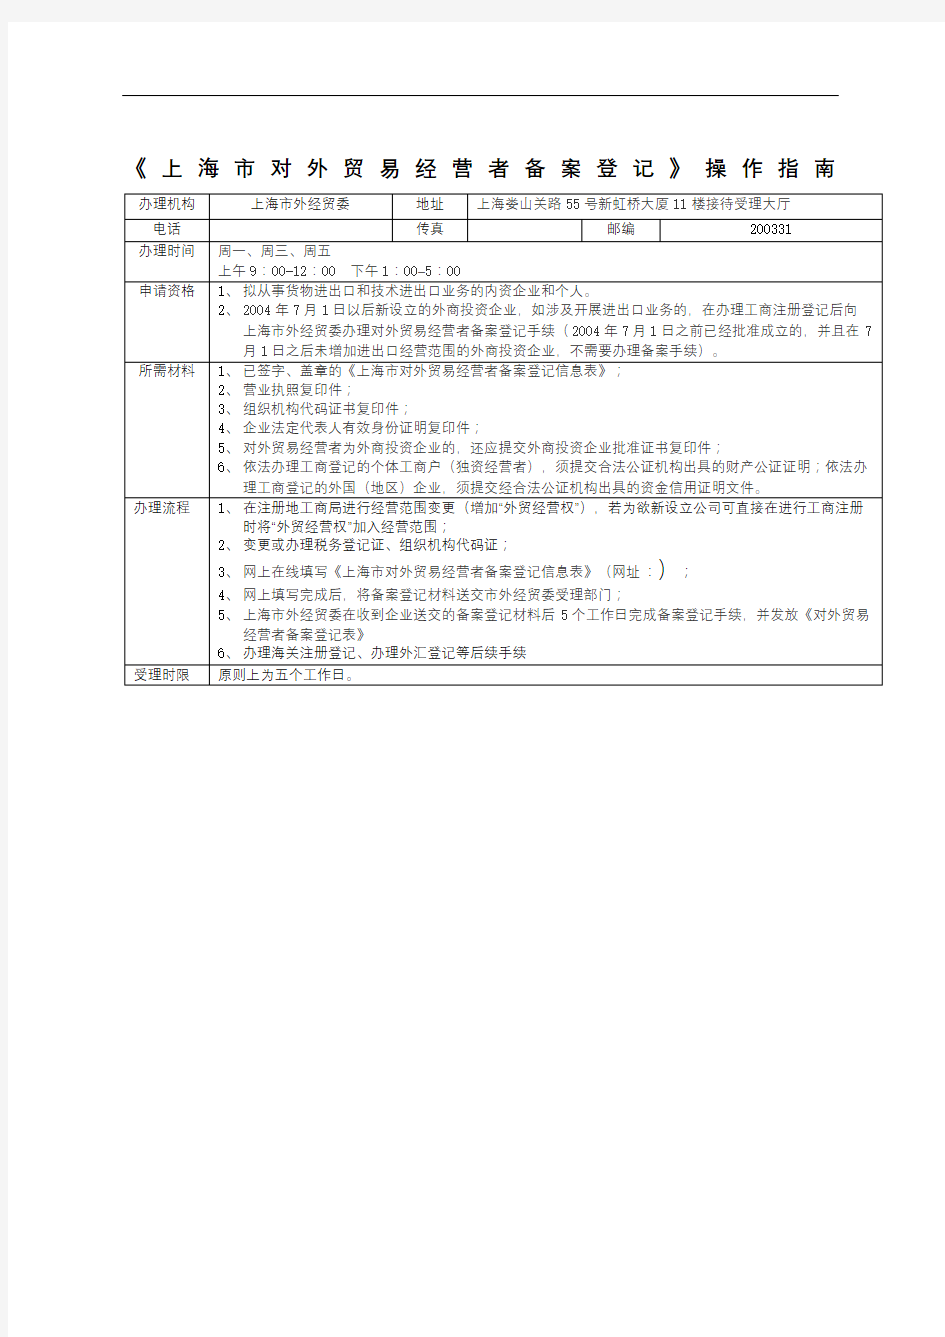 上海对外贸易经营者备案登记操作指南